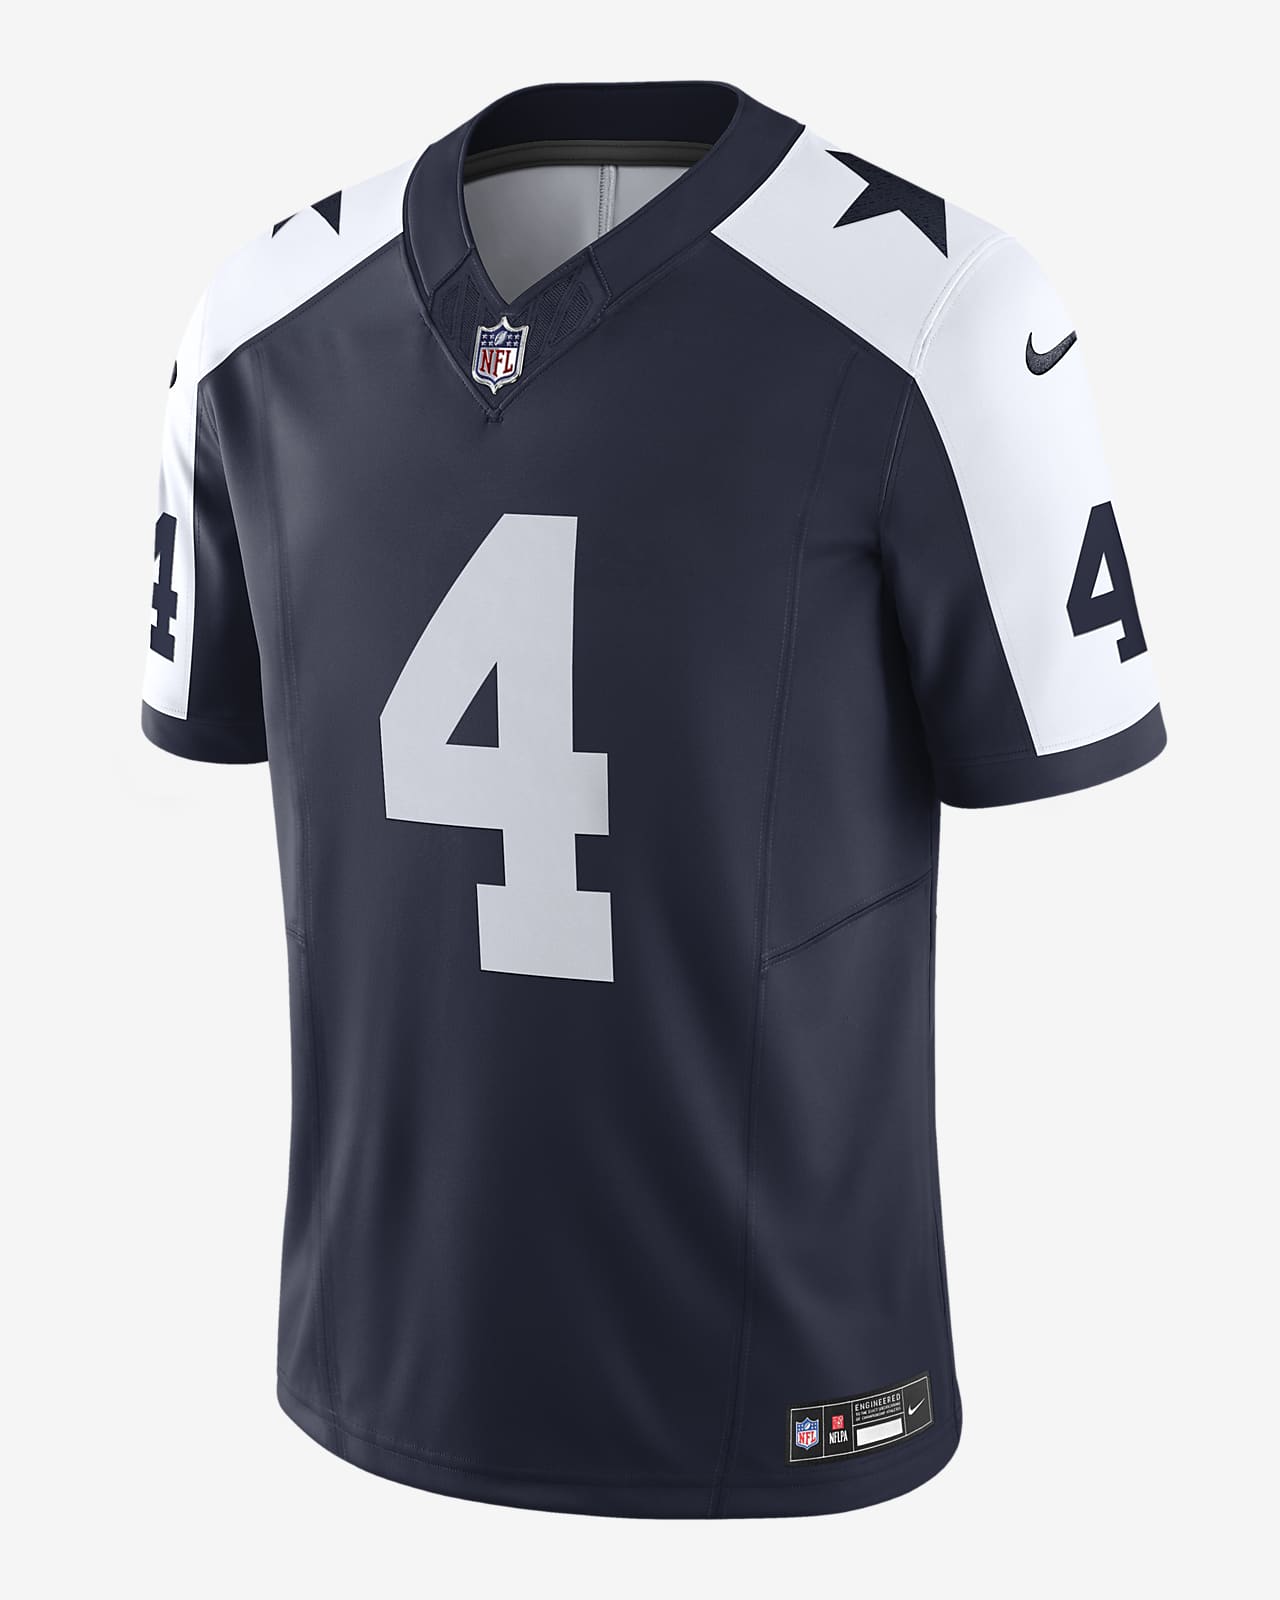 Jersey Nike Dri-FIT de la NFL Limited para hombre Dak Prescott Dallas Cowboys